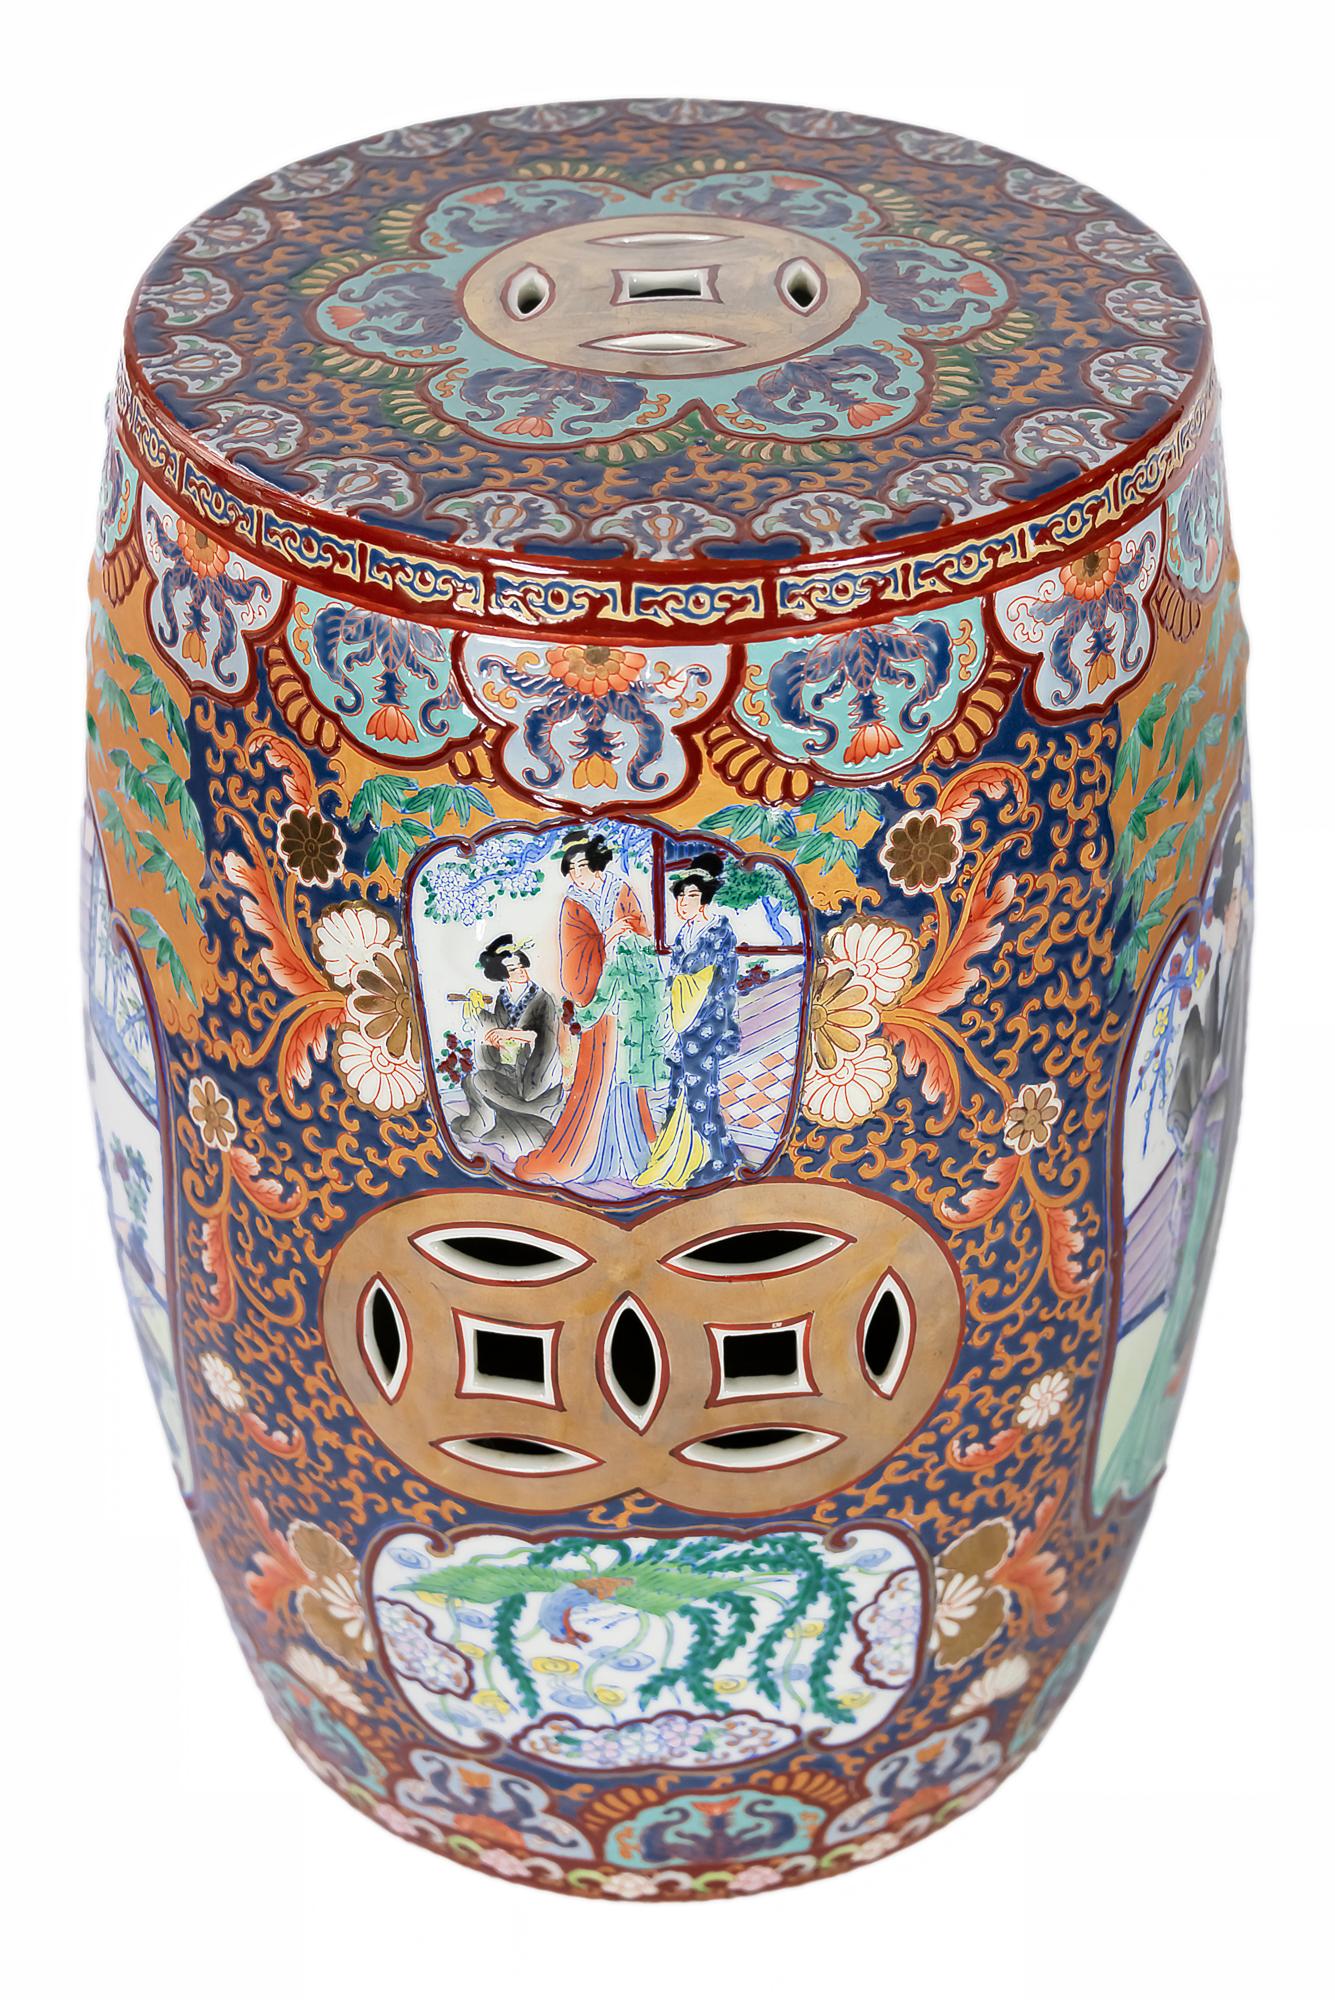 Chinesischer Keramik-Gartenhocker mit durchbrochenen Details und umlaufender Dekoration der floralen Elemente und Damenszenen.

